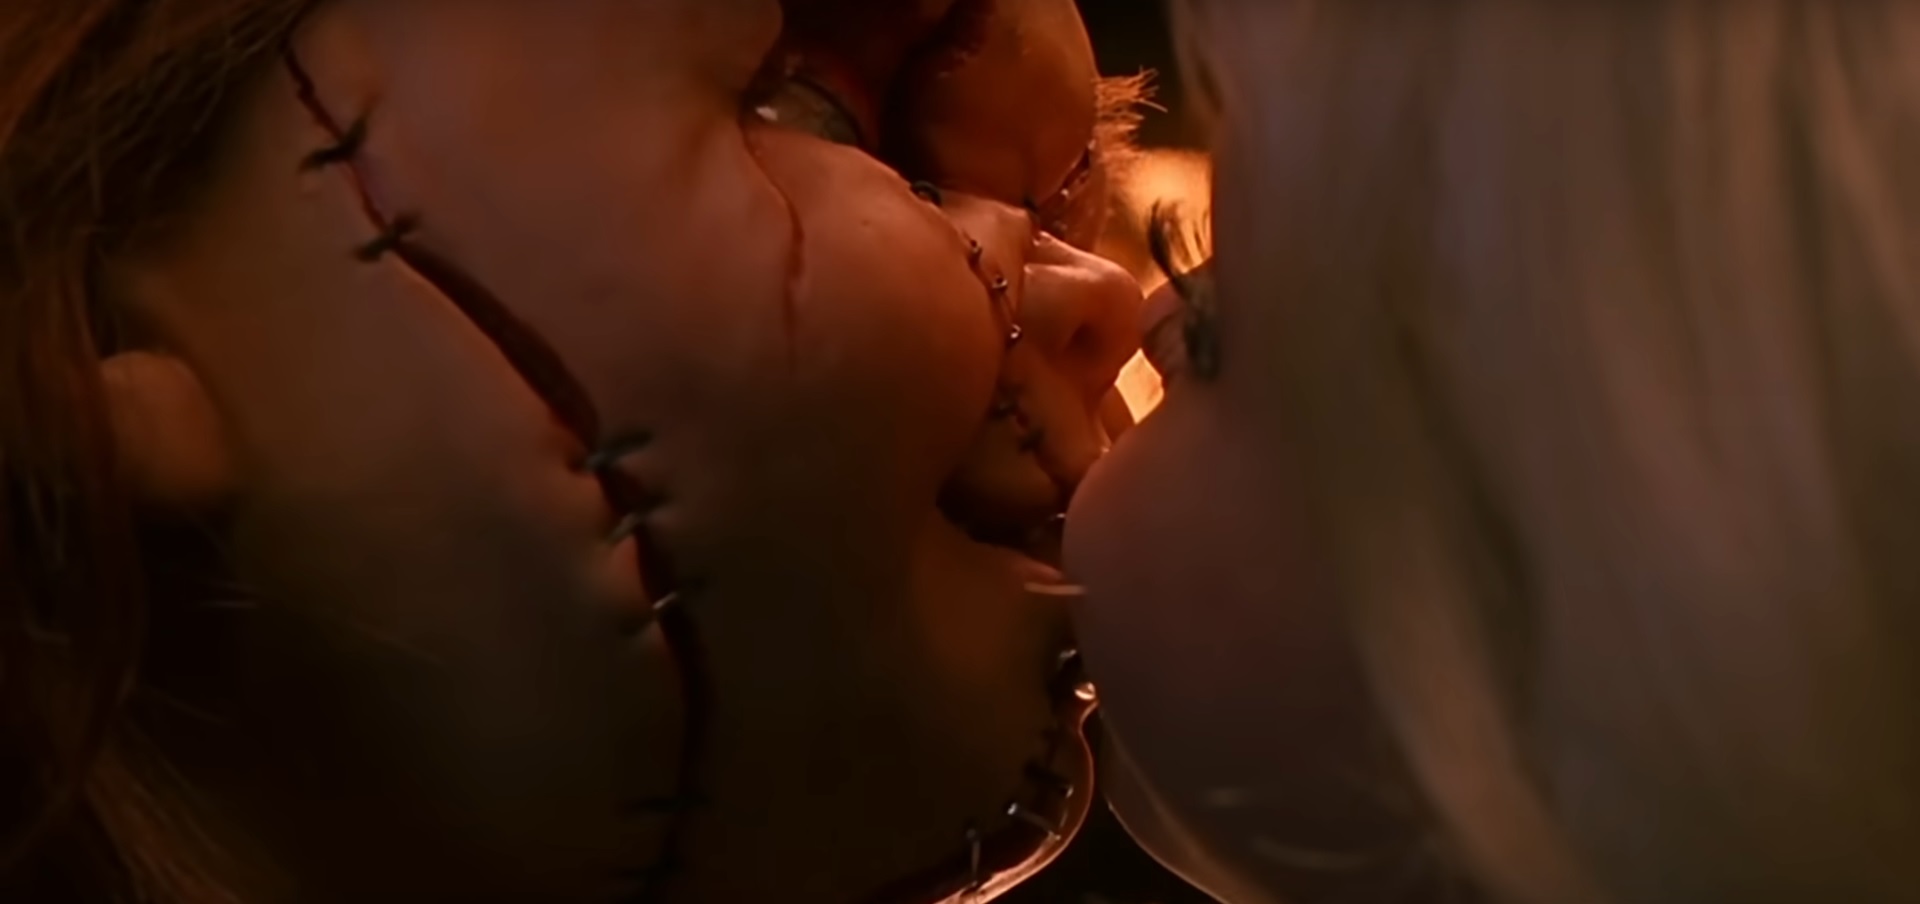 Cena de sexo entre Chucky e Tiffany em A Noiva de Chucky (Reprodução)